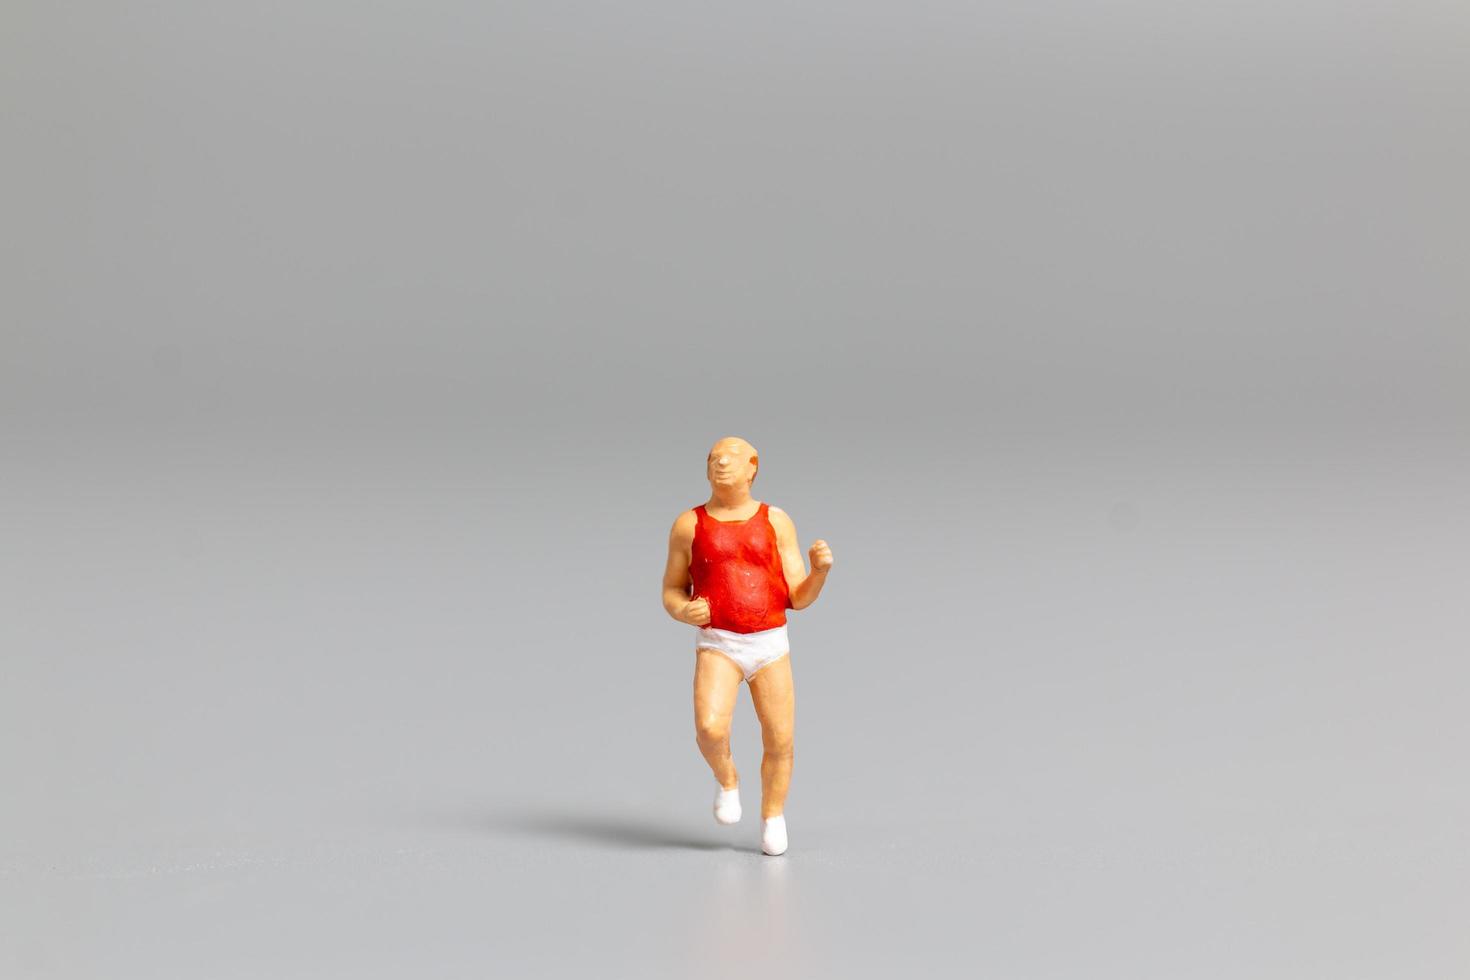 Persona en miniatura corriendo sobre un fondo gris foto